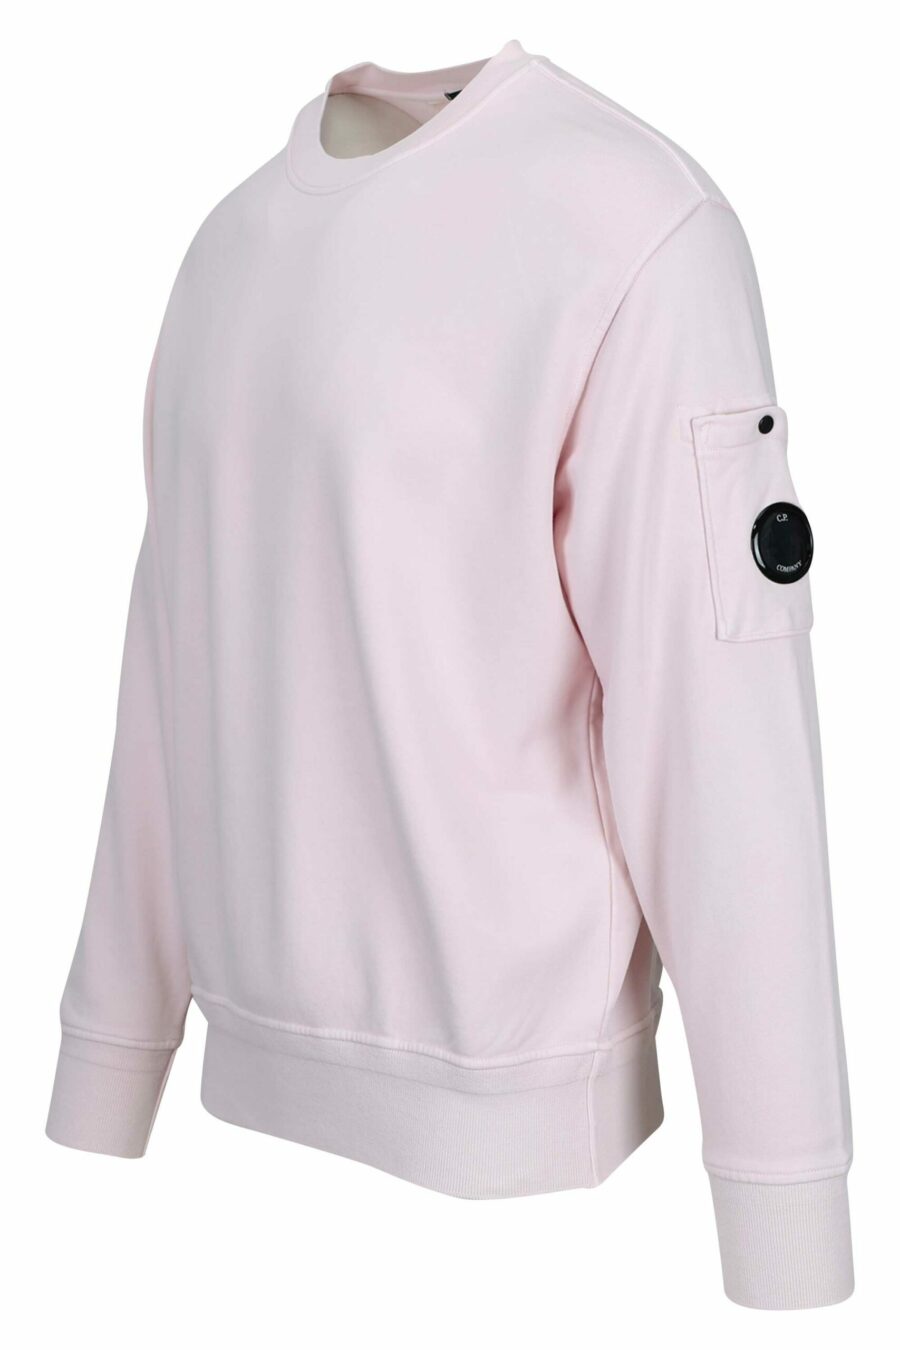 Rosa Sweatshirt mit Tasche und Mini-Logo-Linse - 7620943751697 1 skaliert